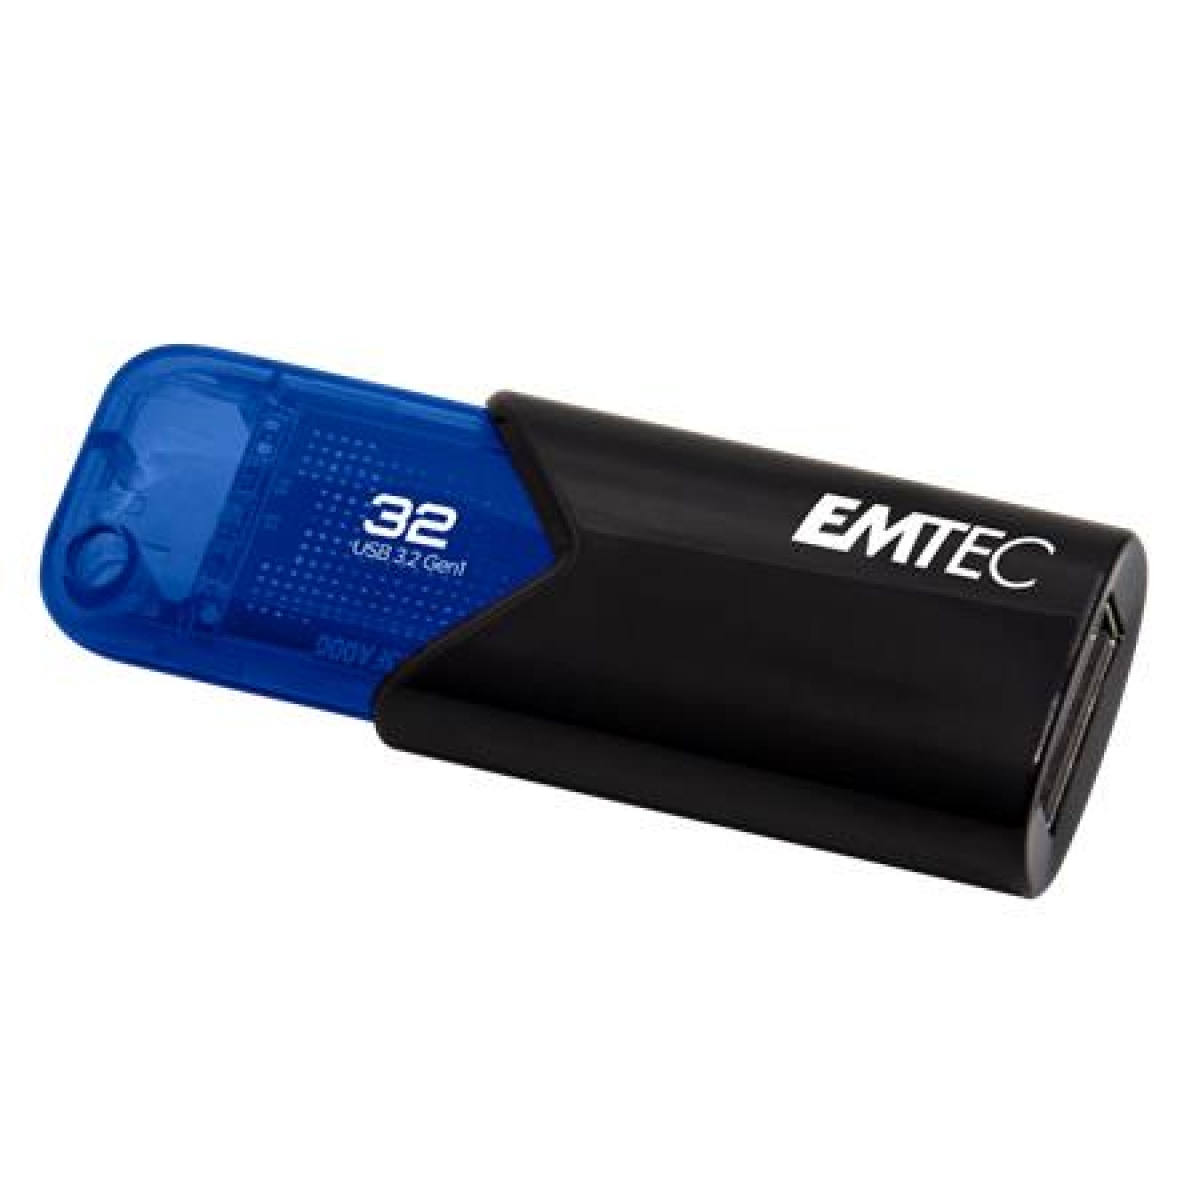 Pendrive 32GB USB 3.2 EMTEC B110 Click Easy fekete-kék